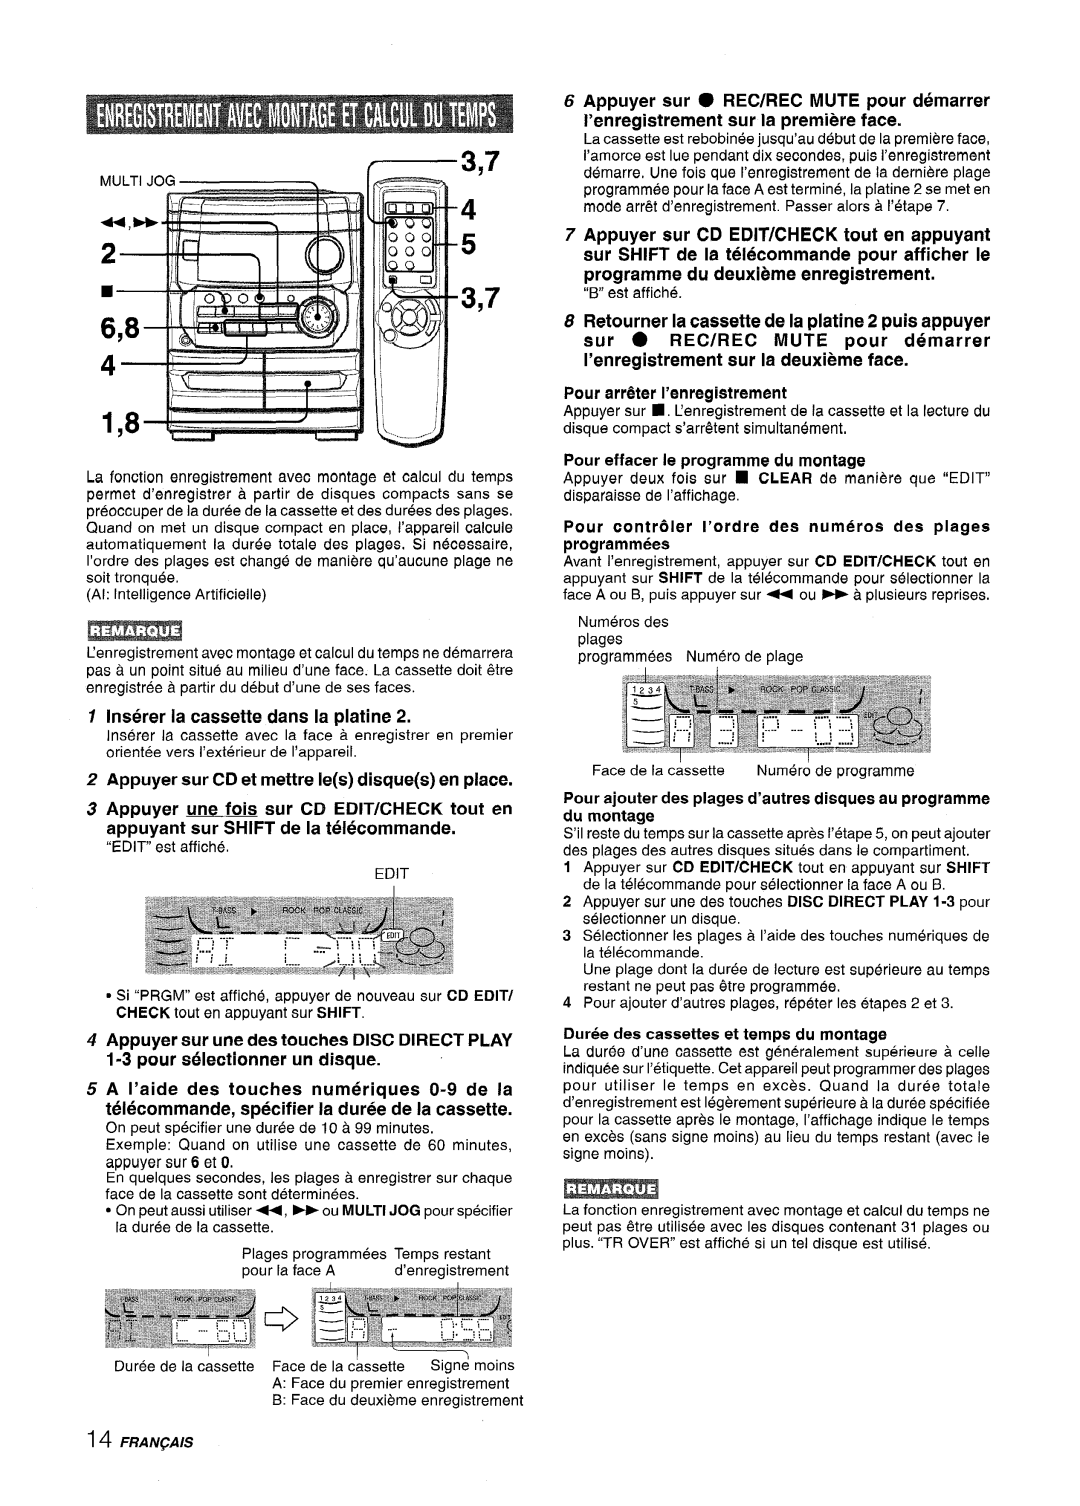 Aiwa CX-NA222 manual Inserer la cassette clans la platine, Pour effacer Ie programme du montage, Du montage 